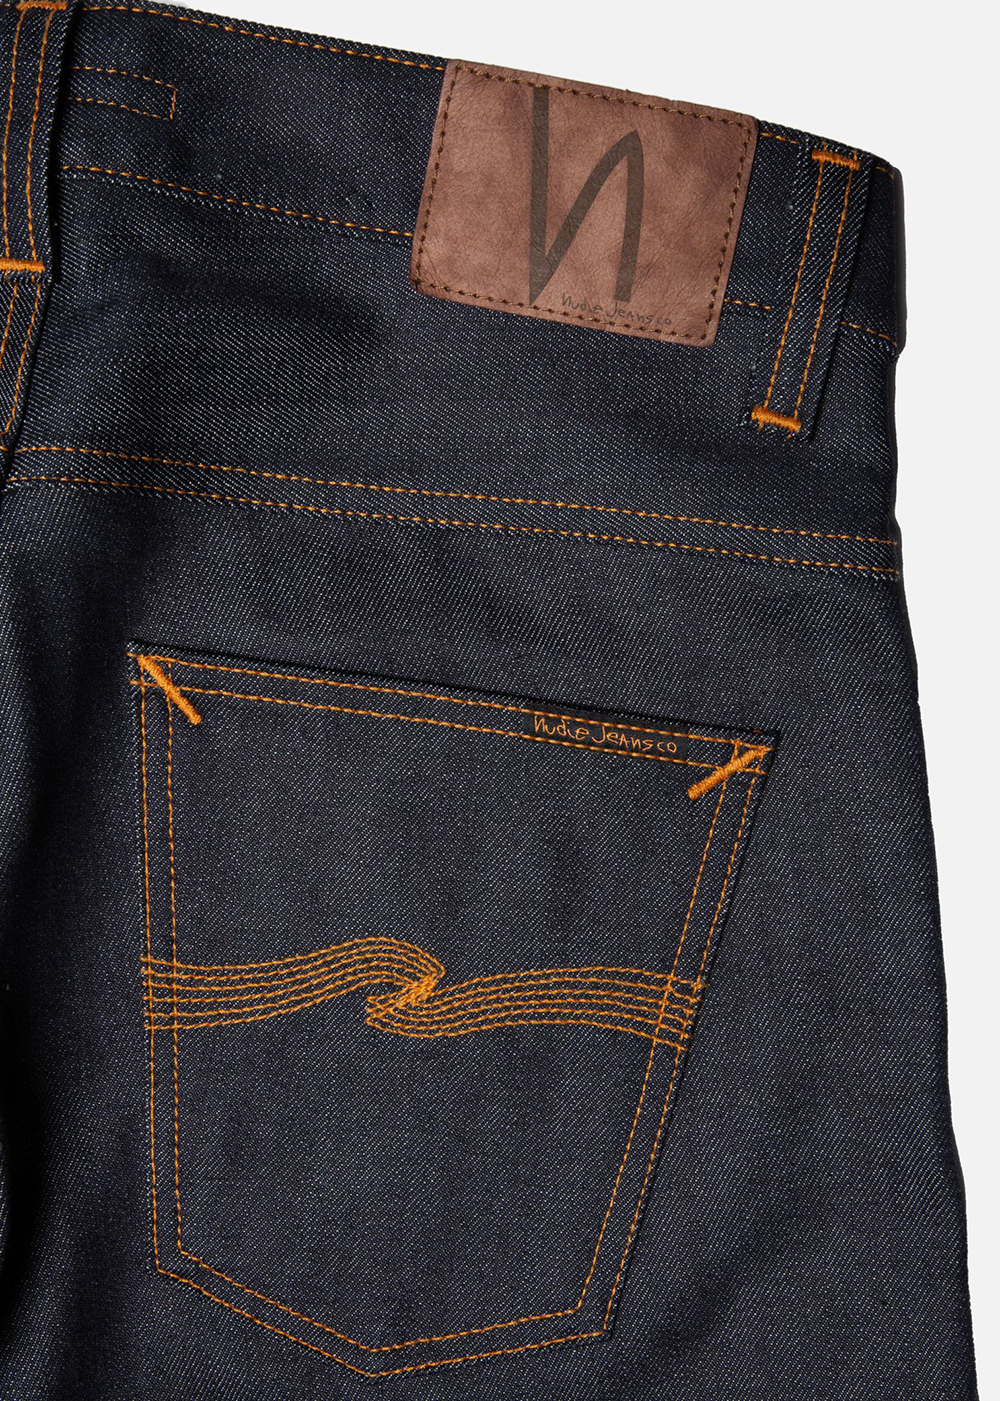 Grim Tim Dry Original Selvedge - Dry Original Selvedge Denim - Nudie Jeans Canada - Danali